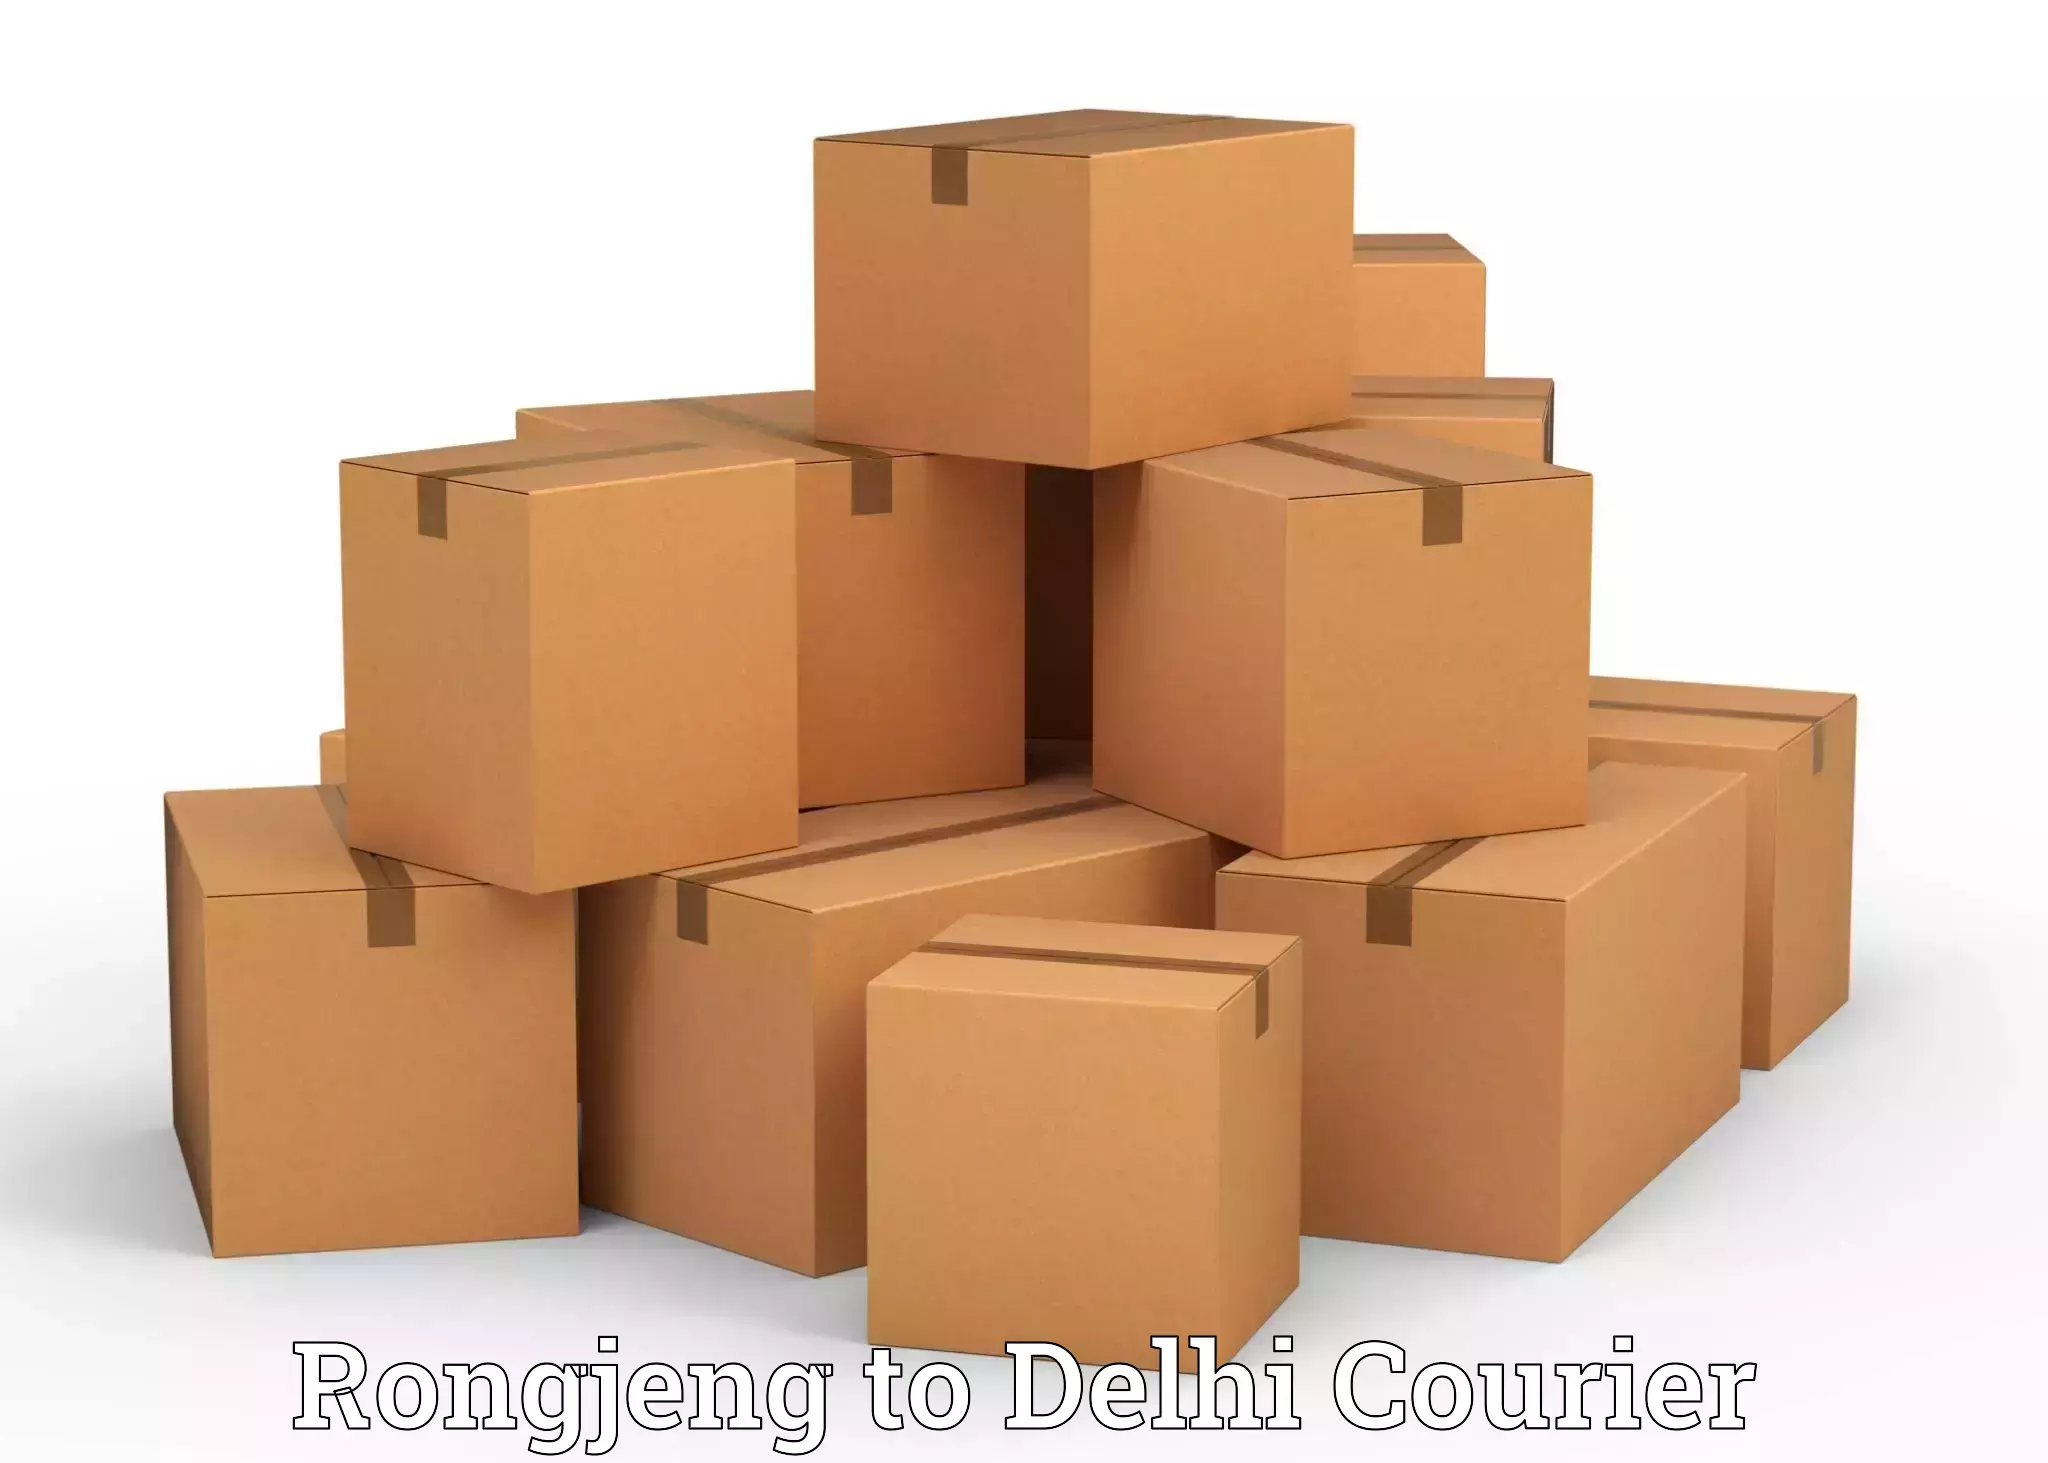 Furniture transport company Rongjeng to Delhi